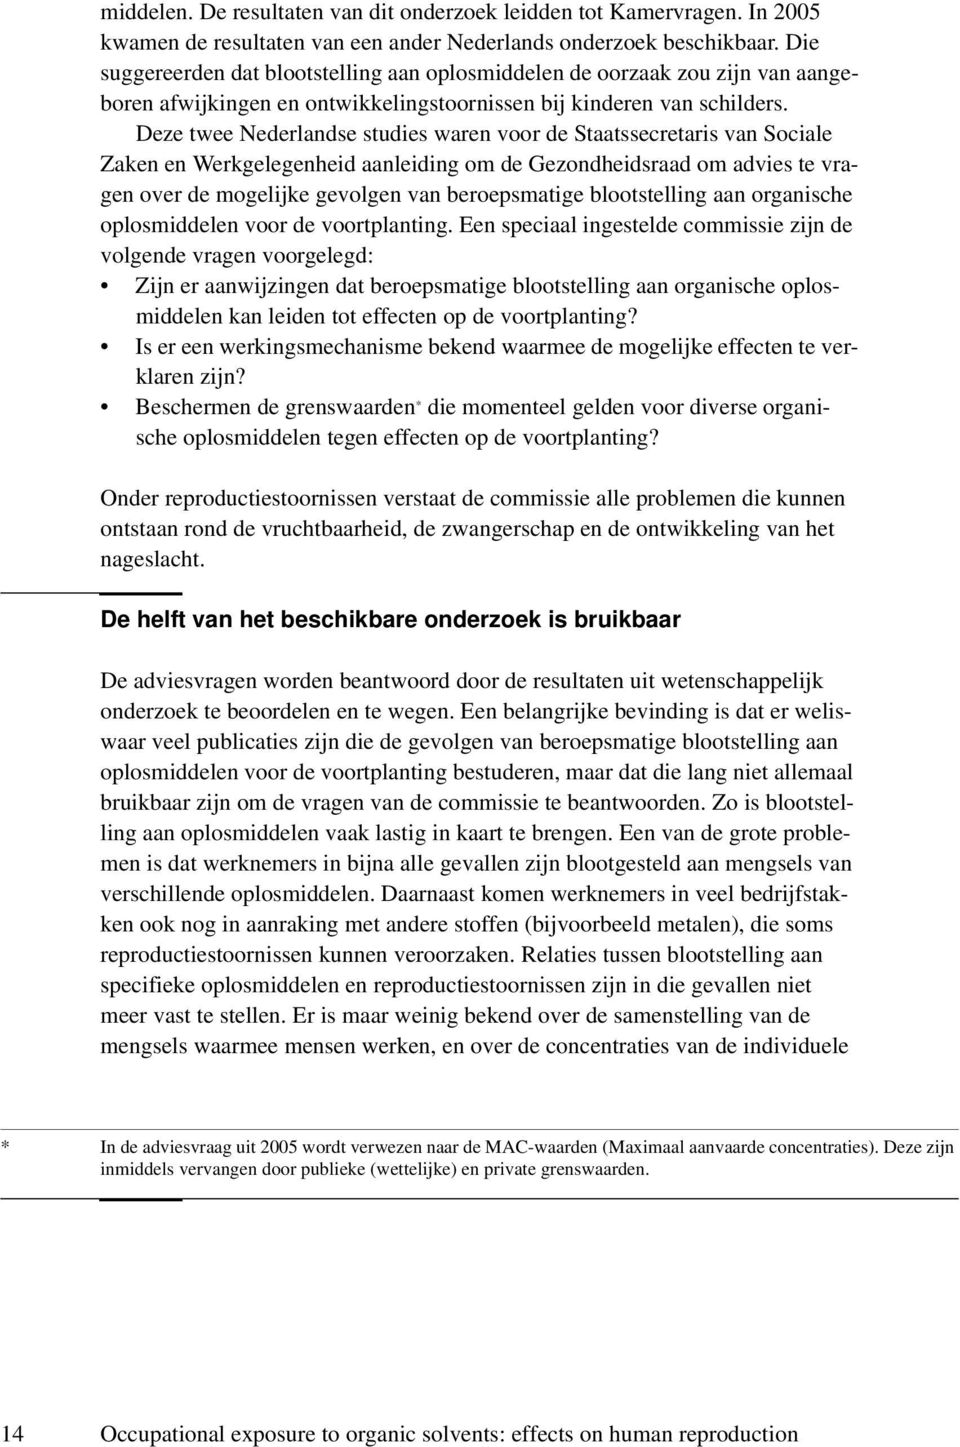 Deze twee Nederlandse studies waren voor de Staatssecretaris van Sociale Zaken en Werkgelegenheid aanleiding om de Gezondheidsraad om advies te vragen over de mogelijke gevolgen van beroepsmatige